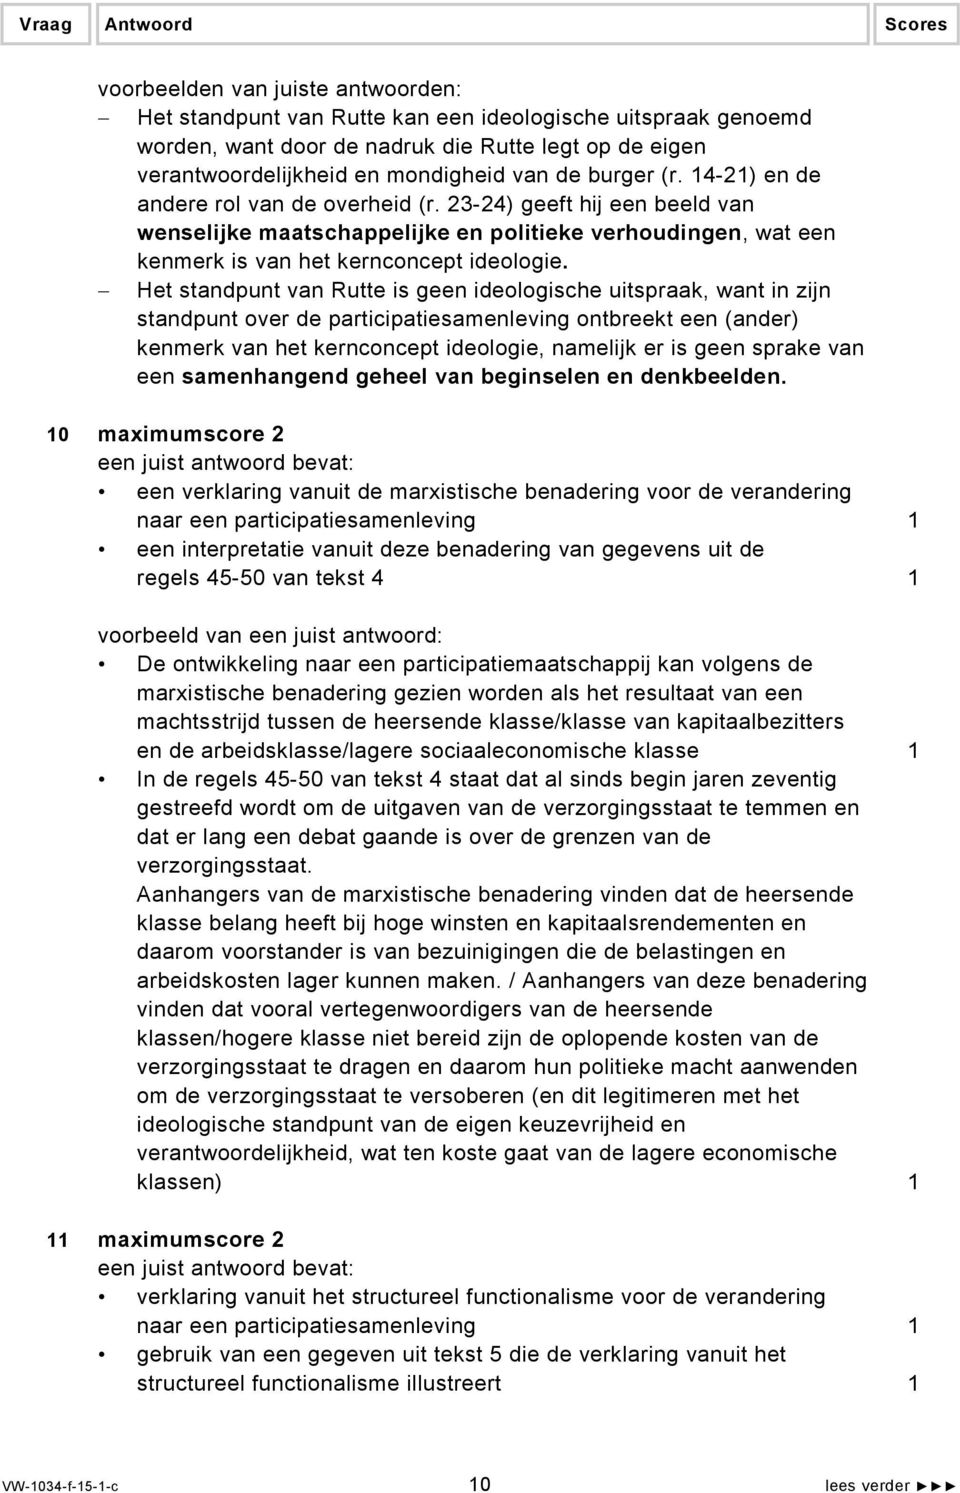 Het standpunt van Rutte is geen ideologische uitspraak, want in zijn standpunt over de participatiesamenleving ontbreekt een (ander) kenmerk van het kernconcept ideologie, namelijk er is geen sprake